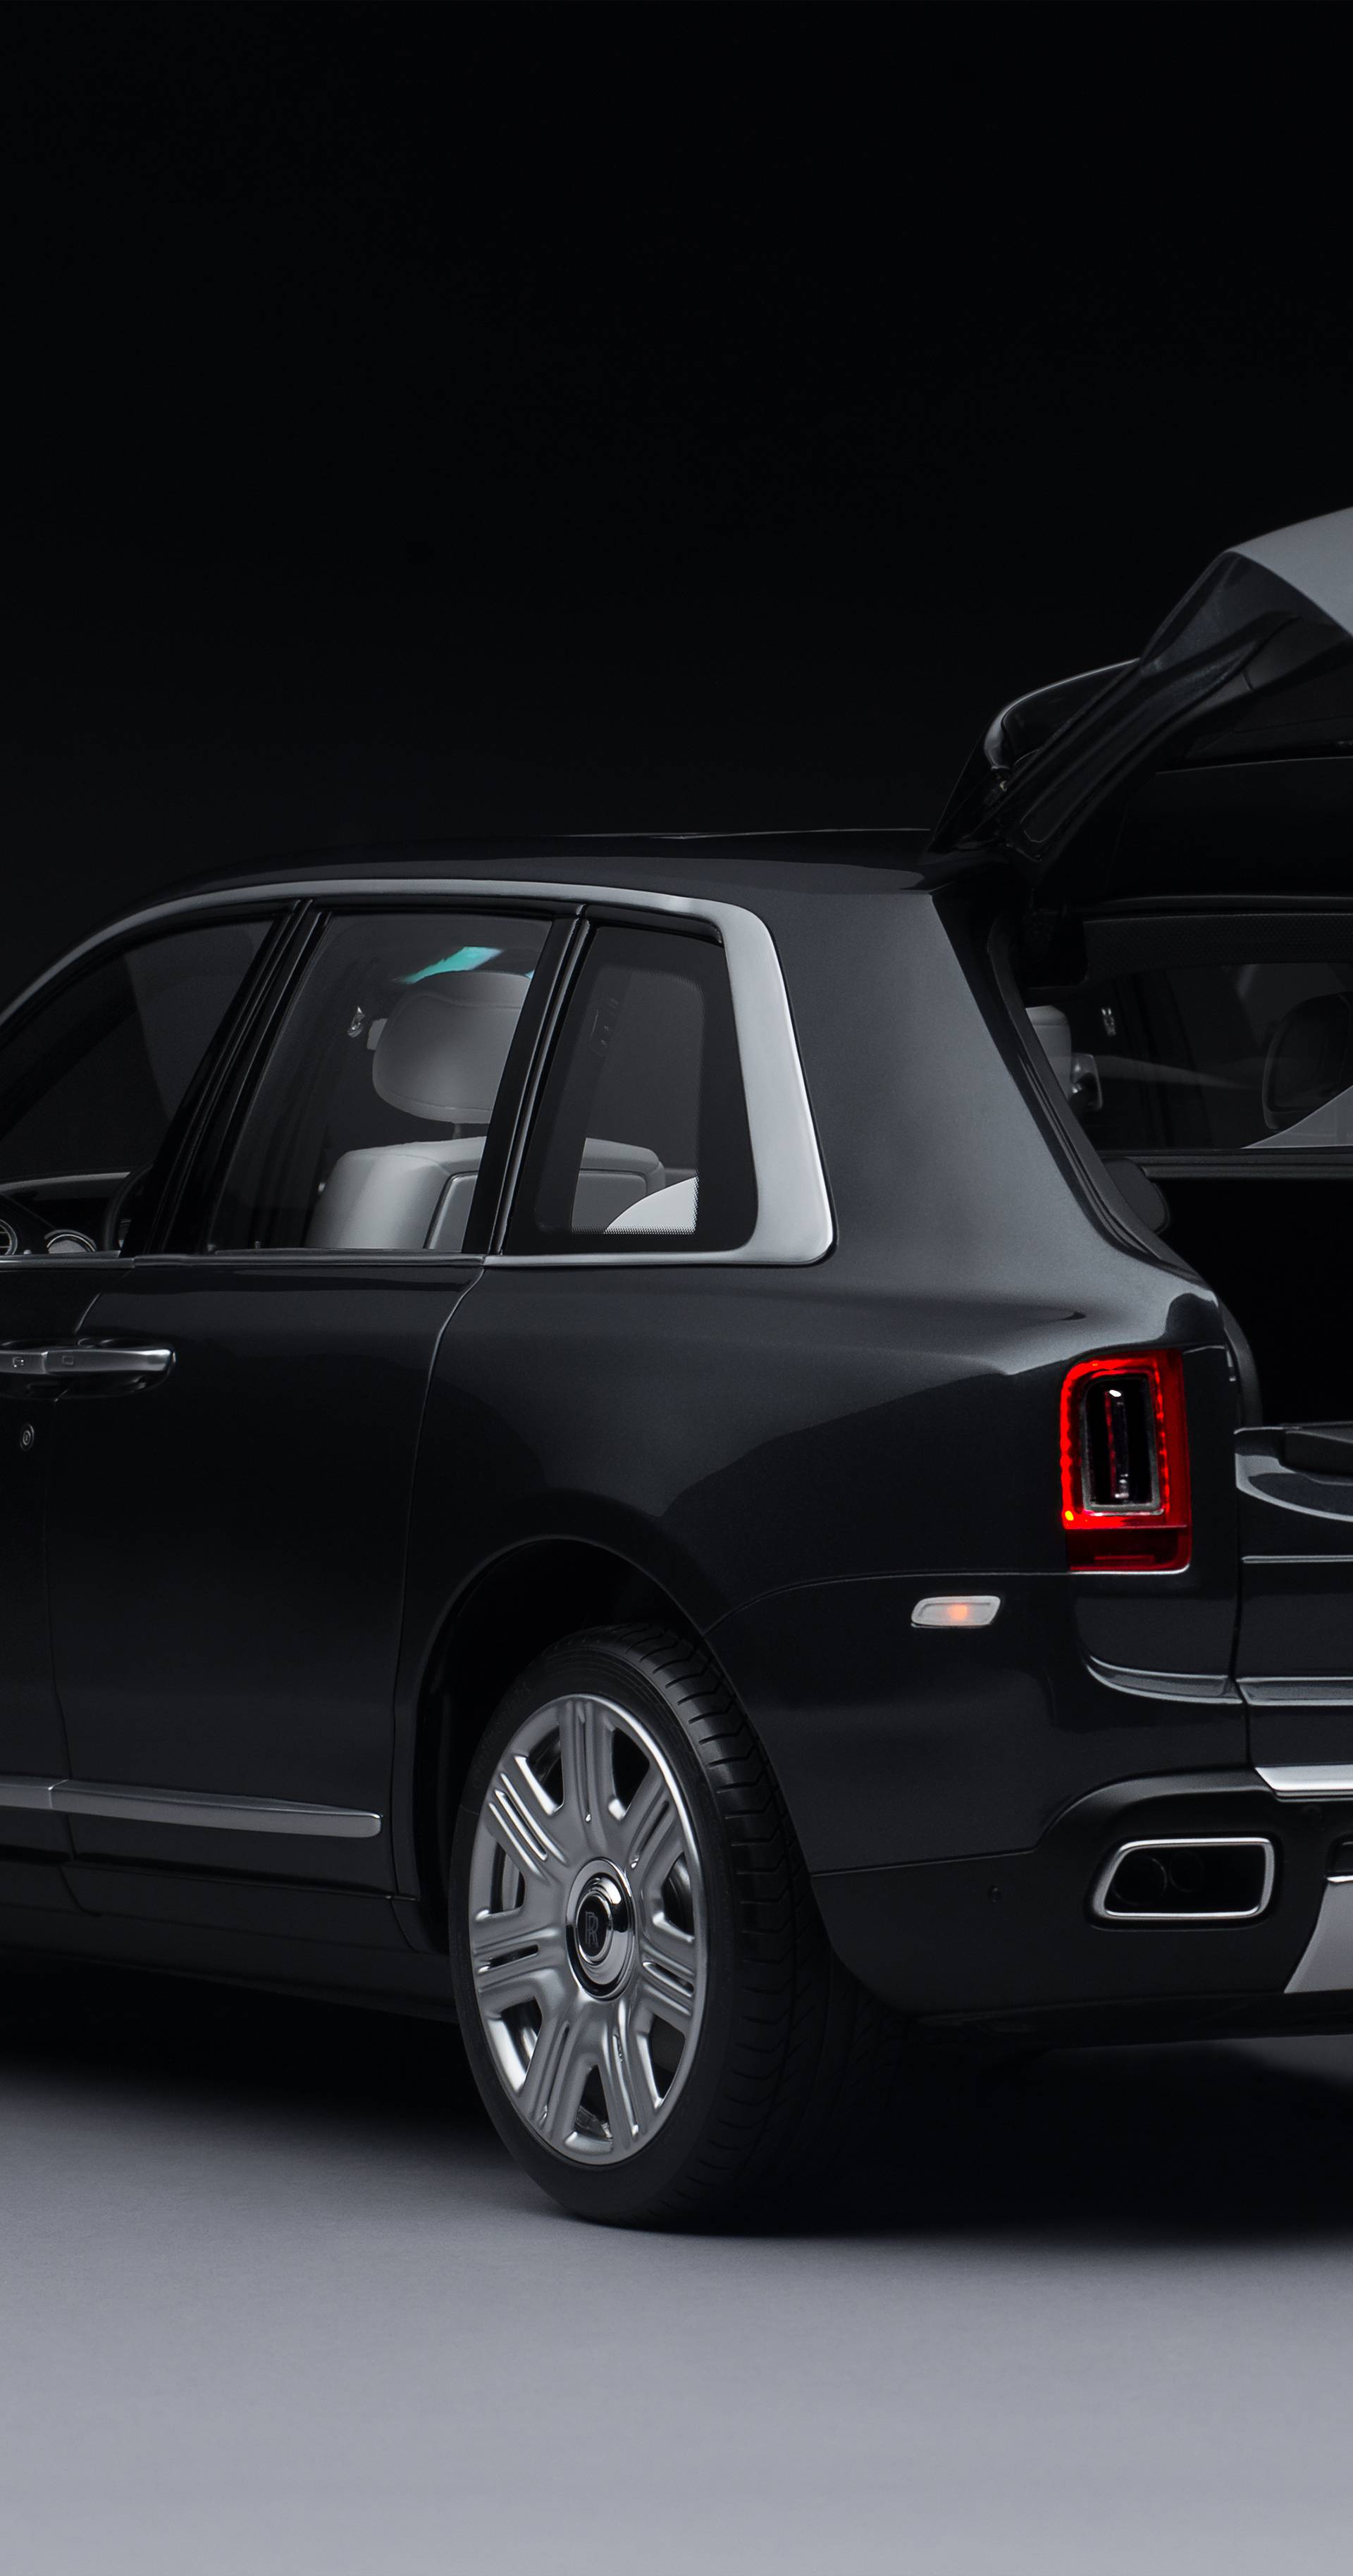 Nevjerojatno, ova Rolls Royce igračka košta čak 35.000 eura